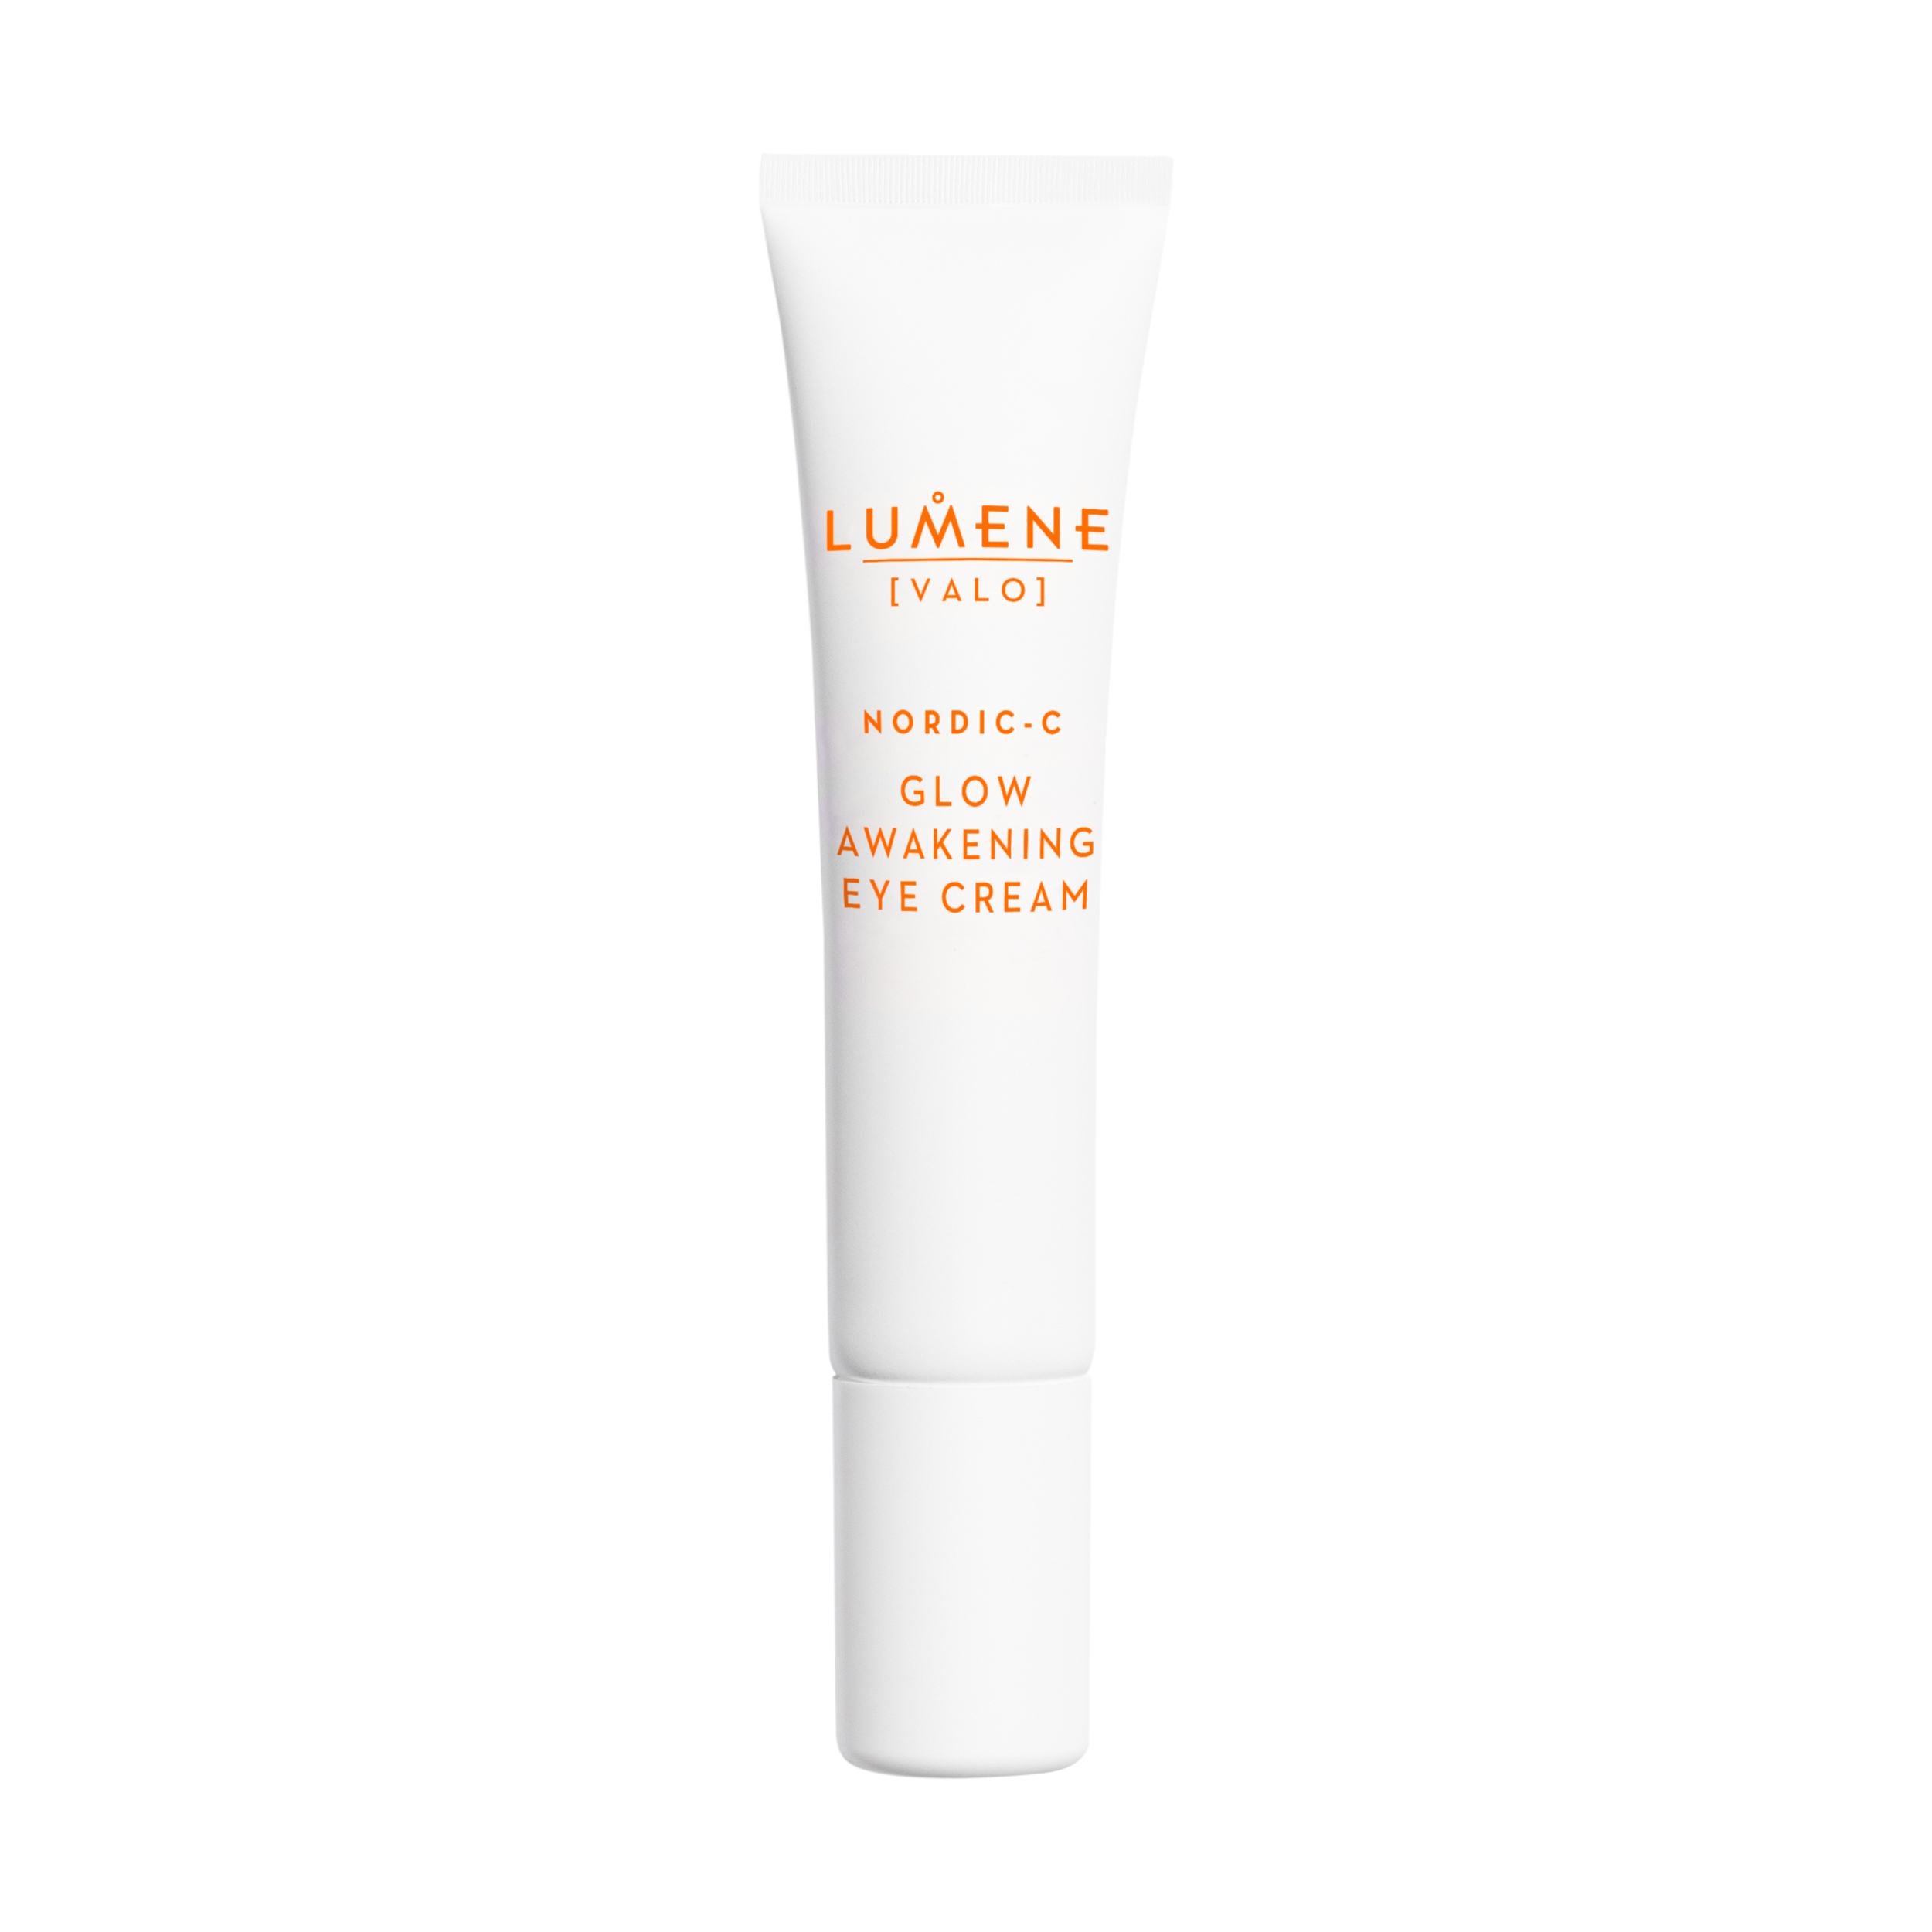 Lumene Nordic-C Glow Awakening Eye Cream, 15 ml